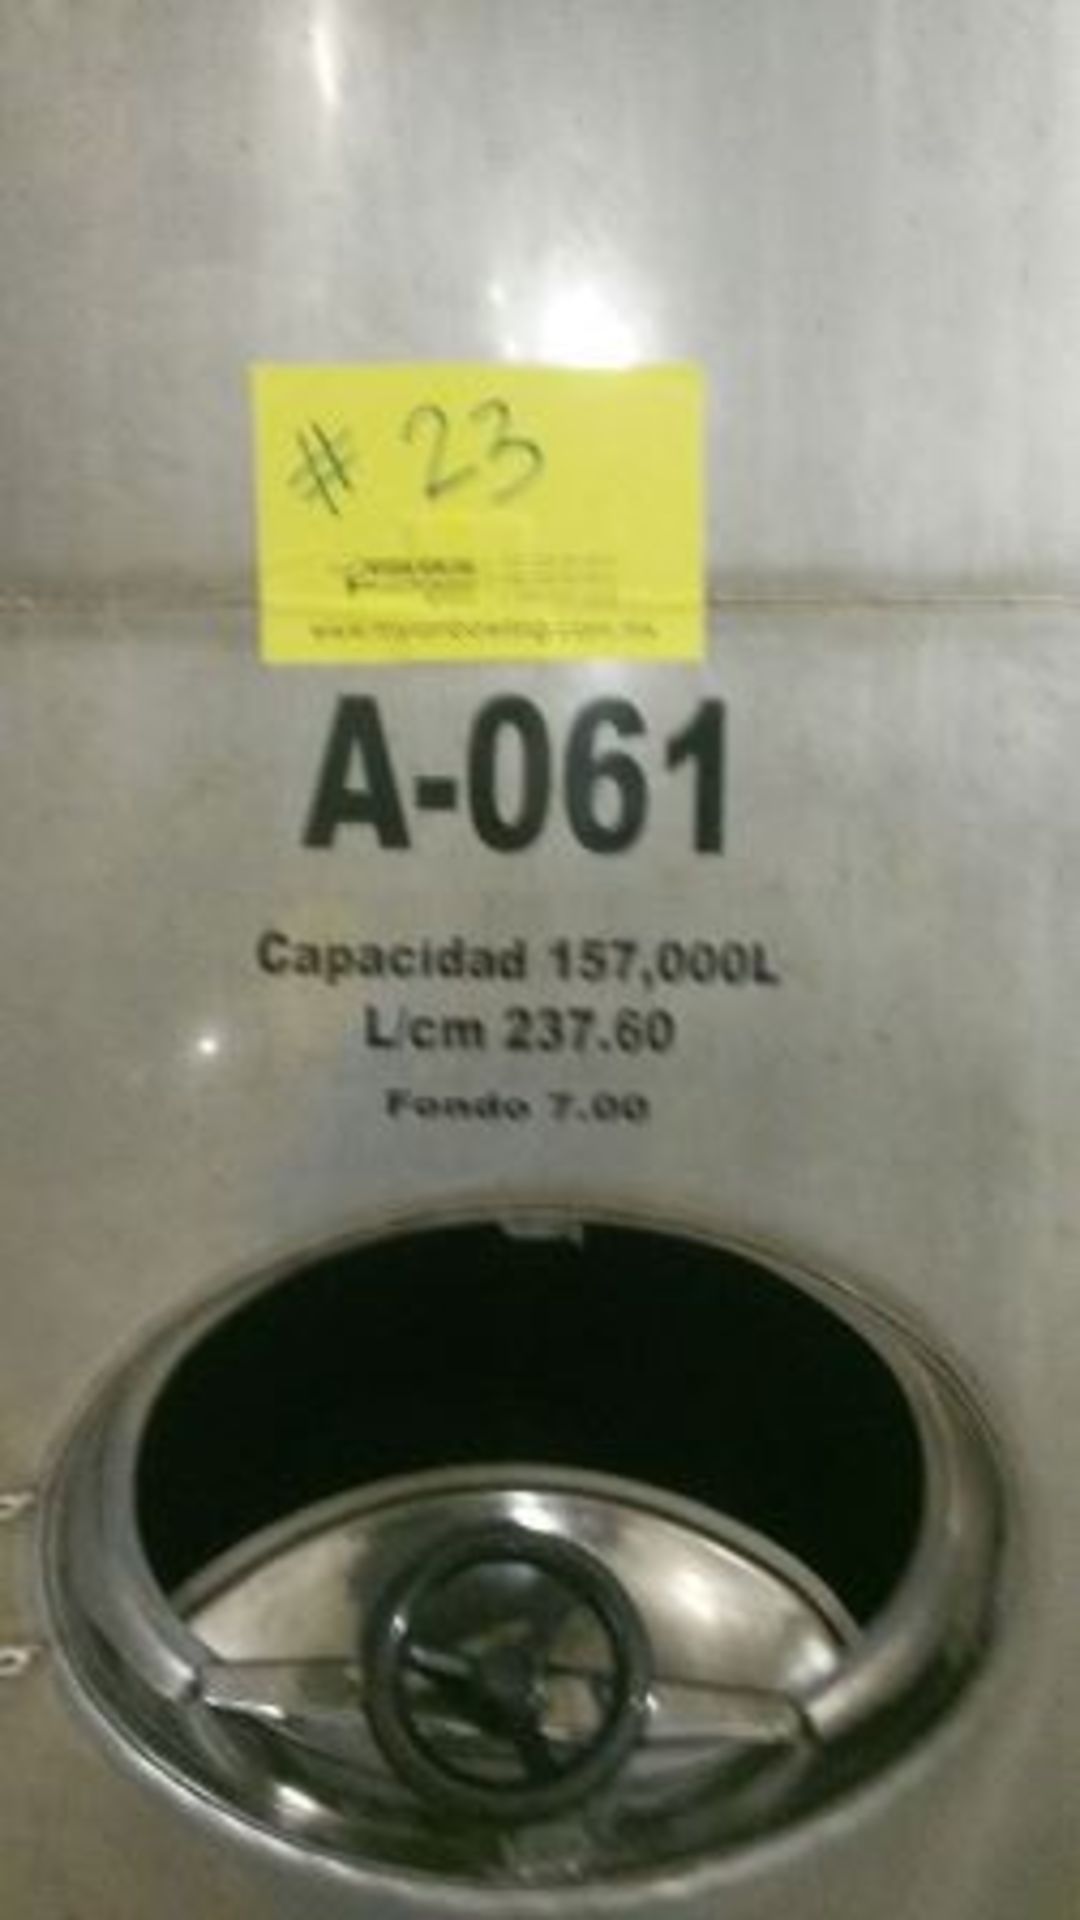 TANQUE DE 157,000 LTS DE CAPACIDAD, MATERIAL ACERO INOXIDABLE 304, CON ALTURA DE 6.70 METROS Y - Image 3 of 16